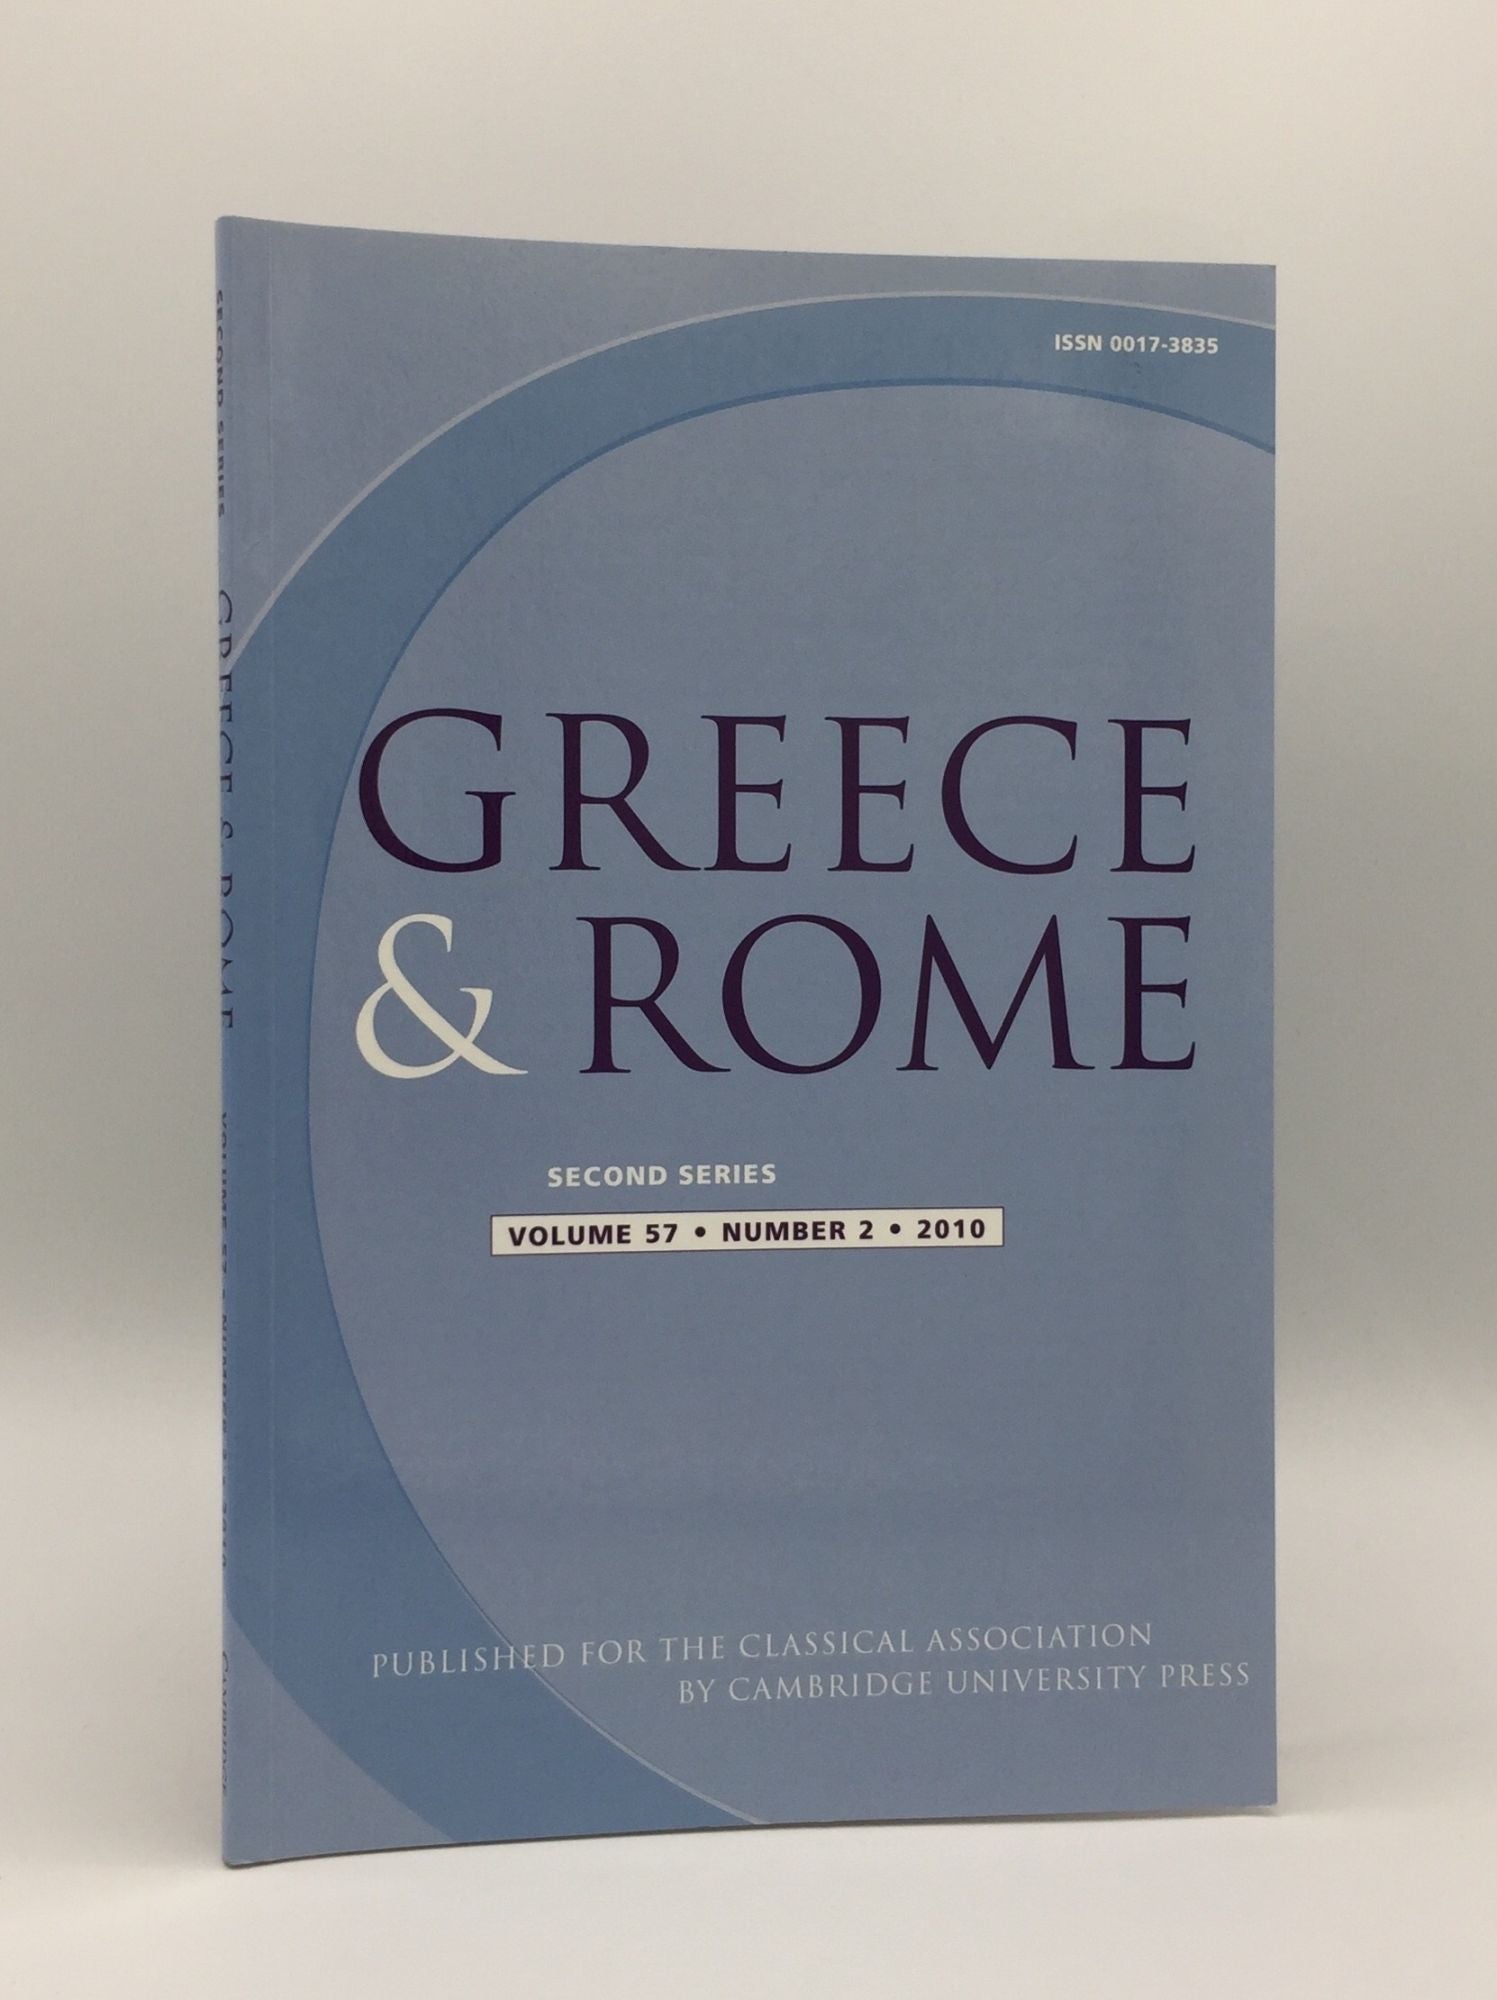 TAYLOR J., IZZET V., SHORROCK R. - Greece & Rome Second Series October 2010 Vol. 57 No. 2